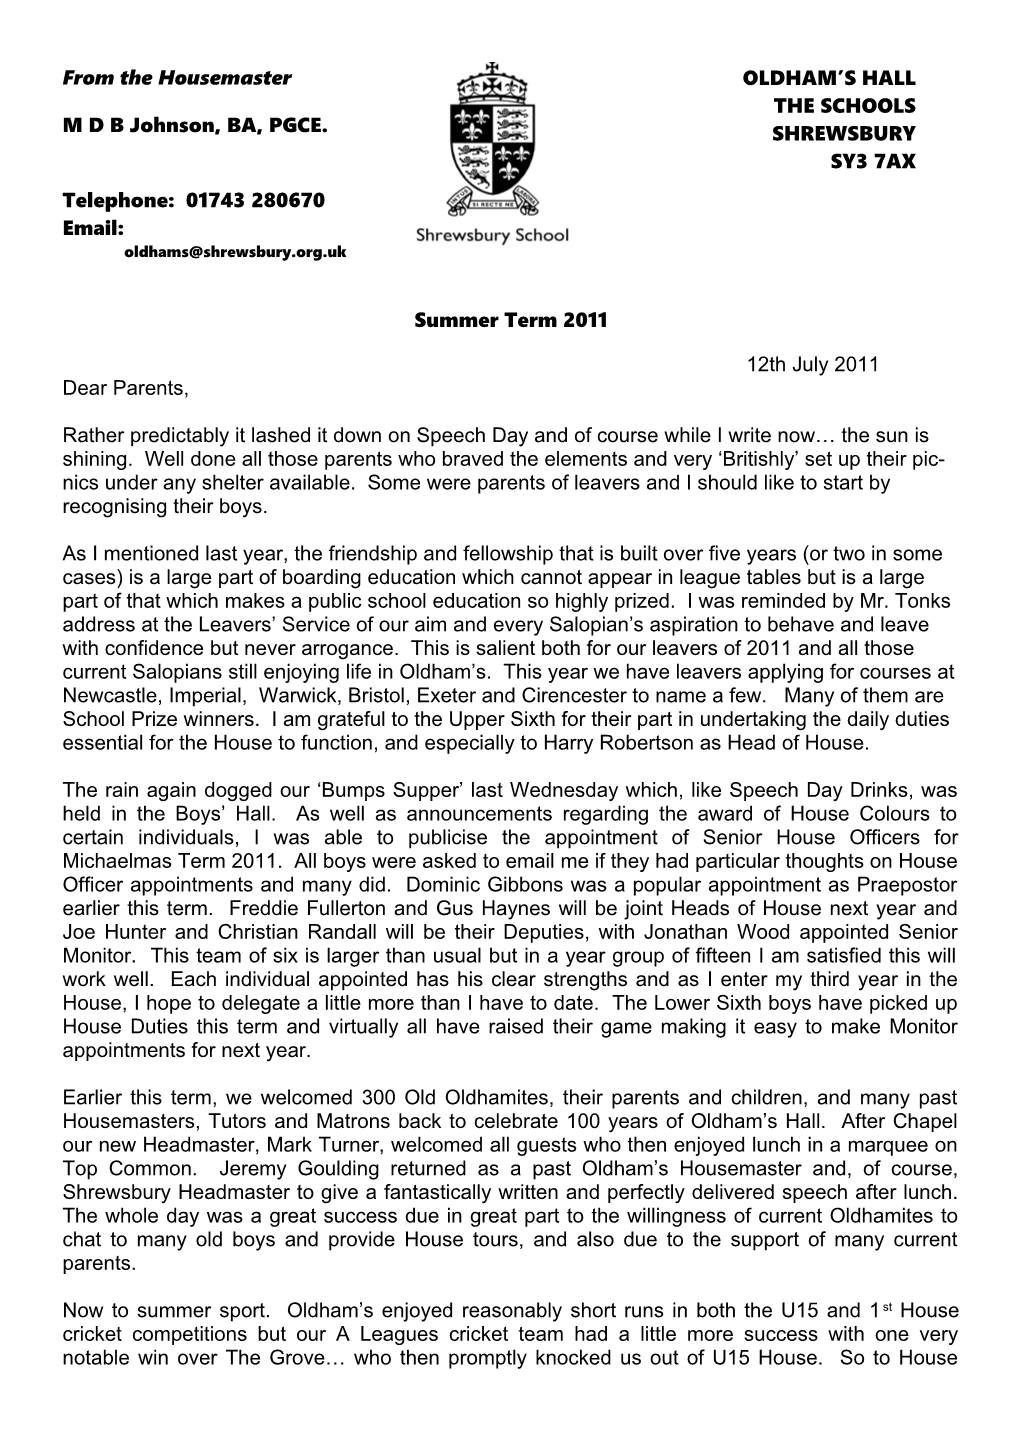 GFP Letter from RNRJ for Sept 96